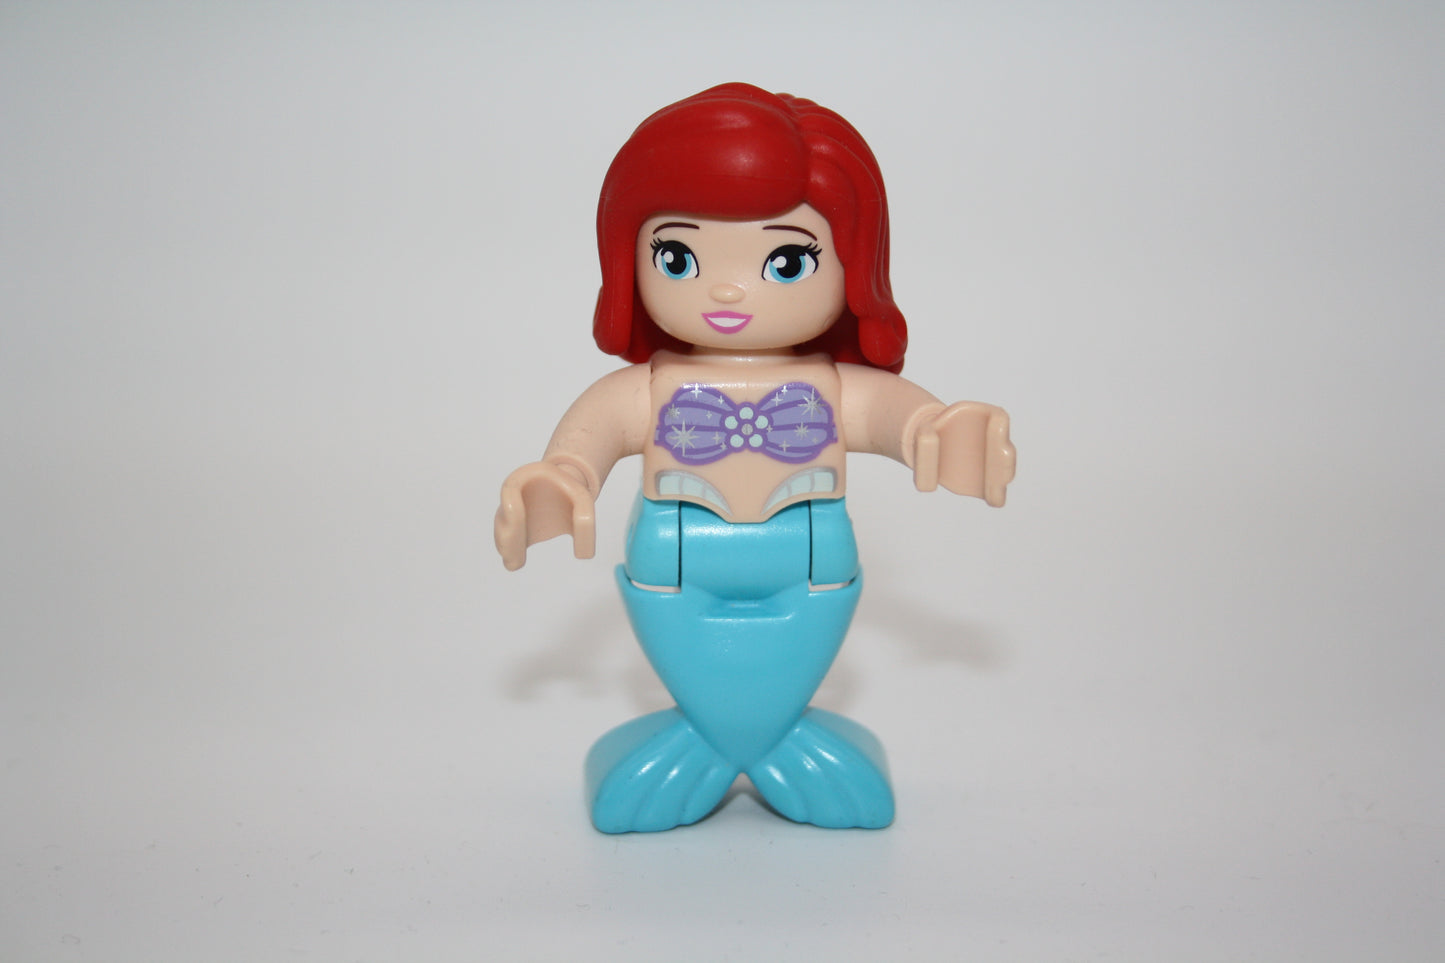 Duplo - Arielle die Meerjungfrau mit blaue Flosse - Disney Figur - neue Serie